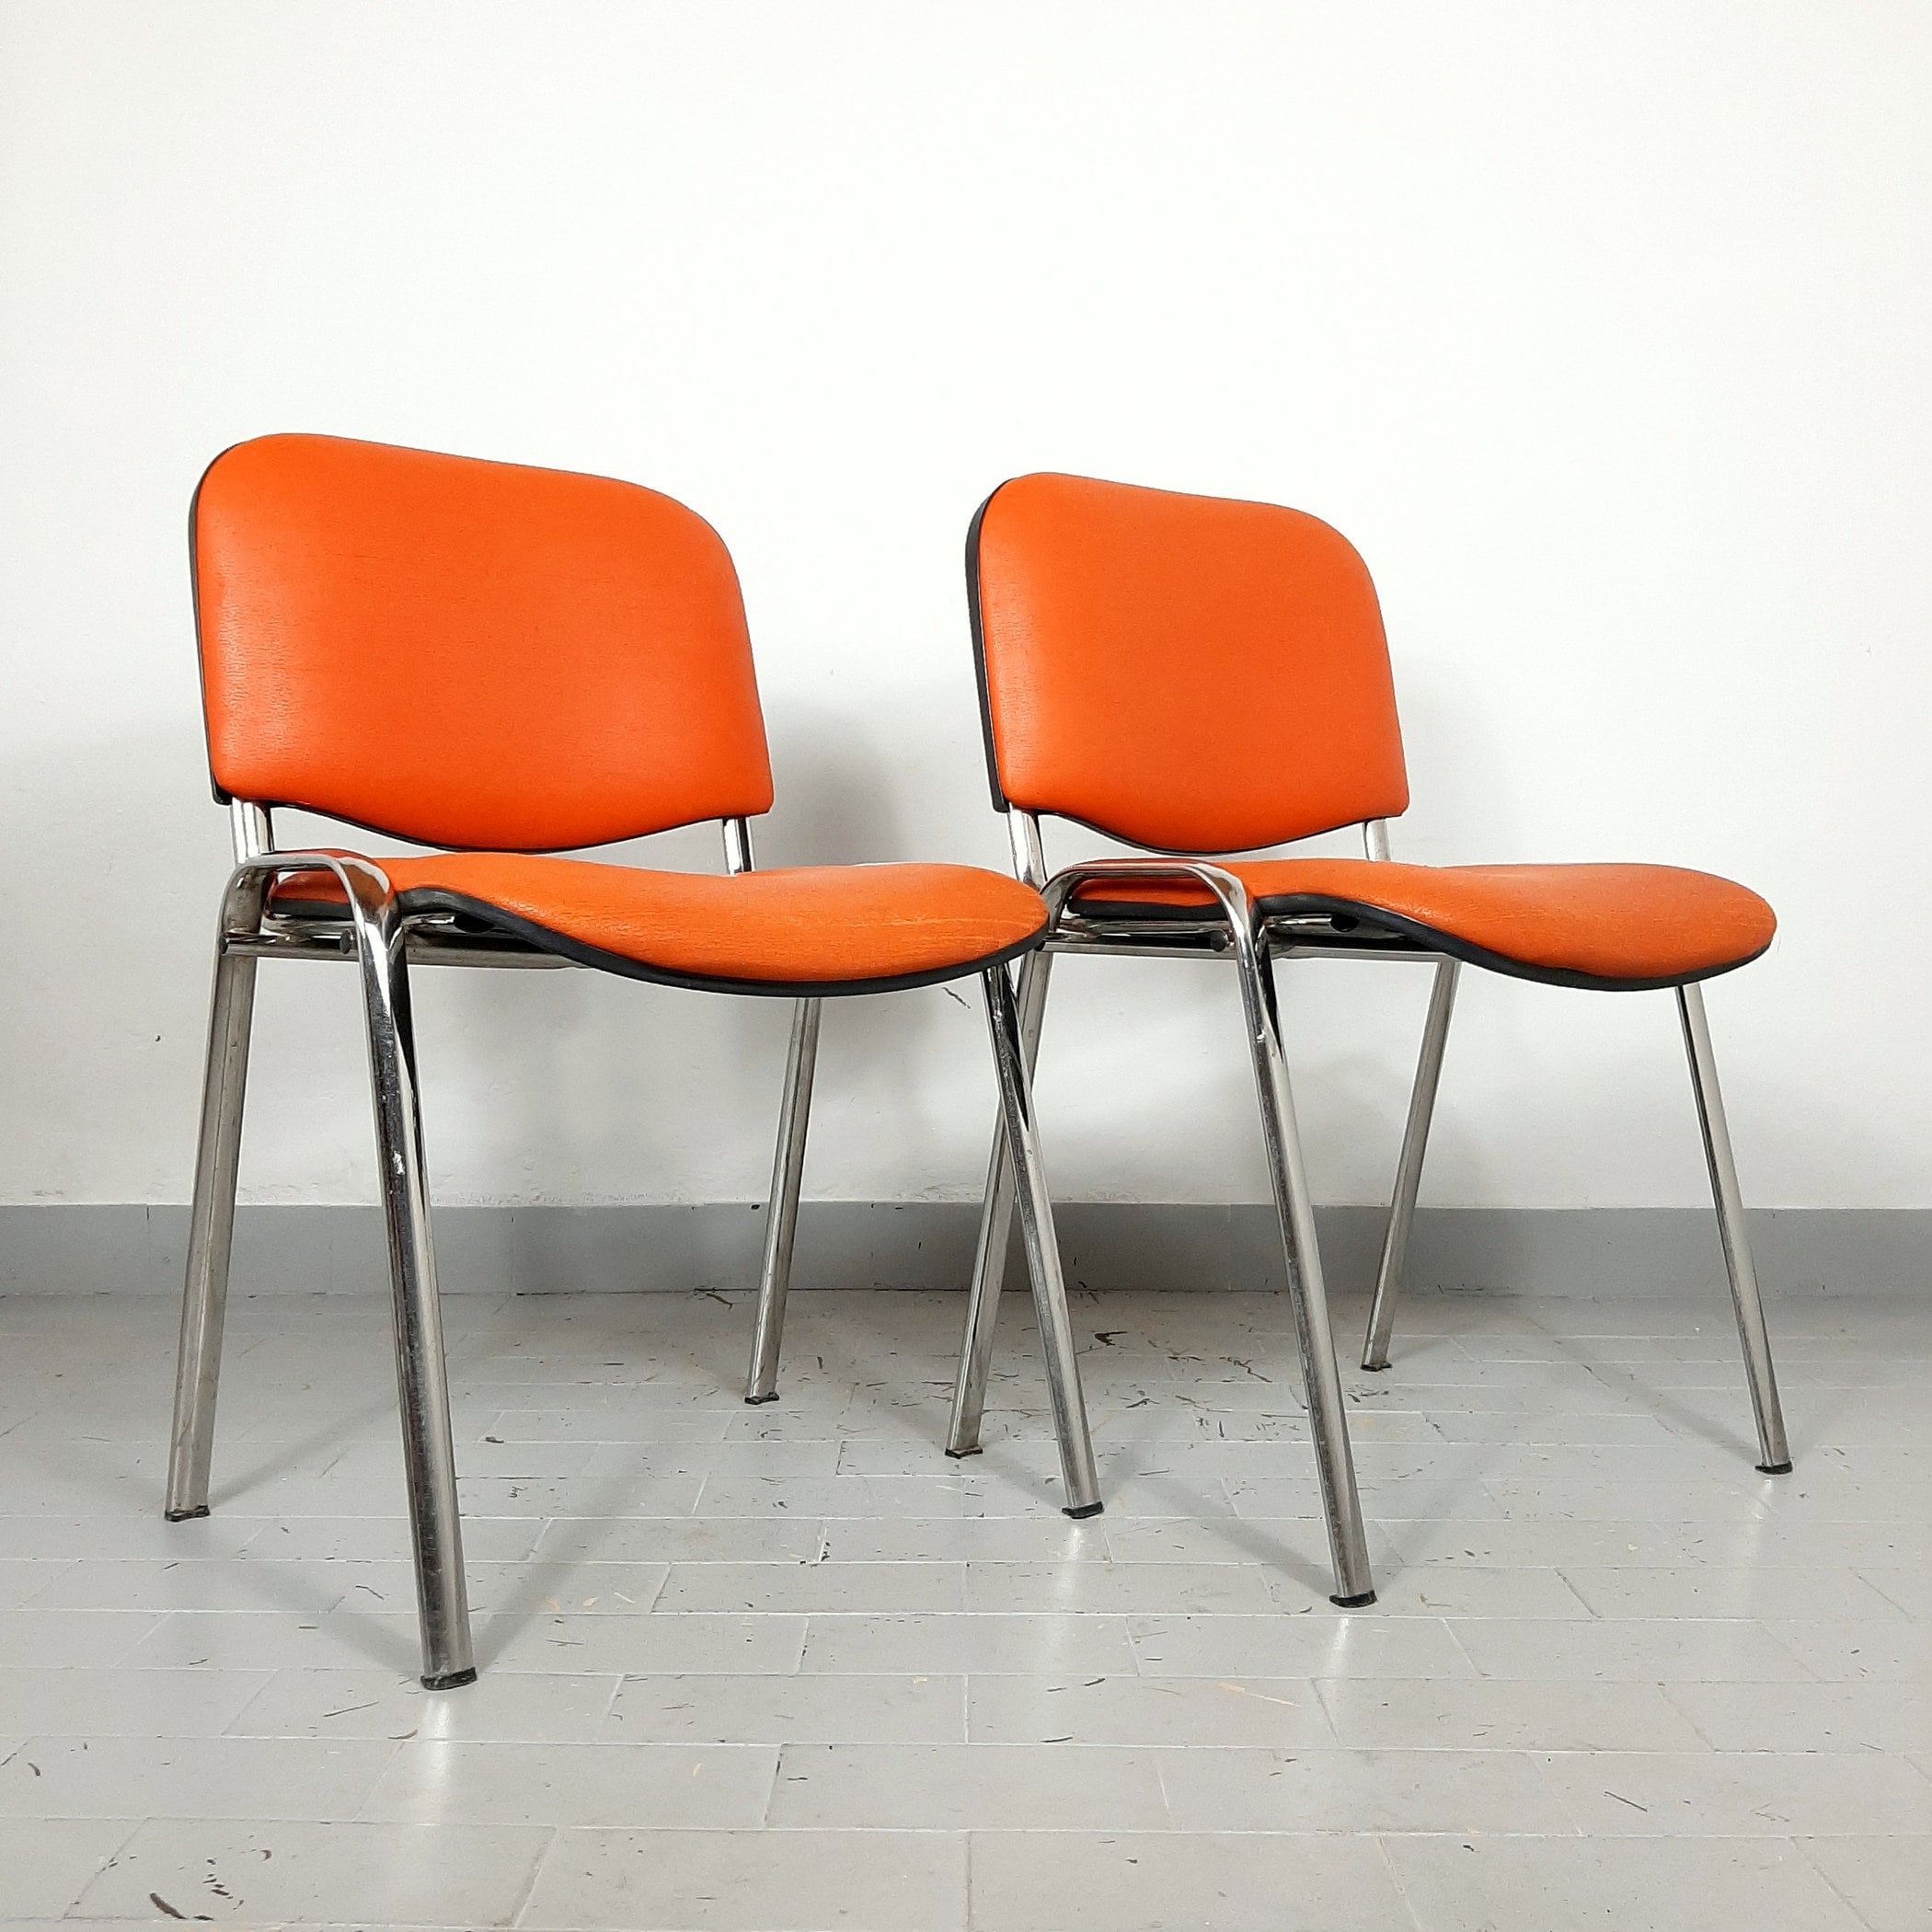 chaise de bureau rétro yougoslavie années 80 chaise orange